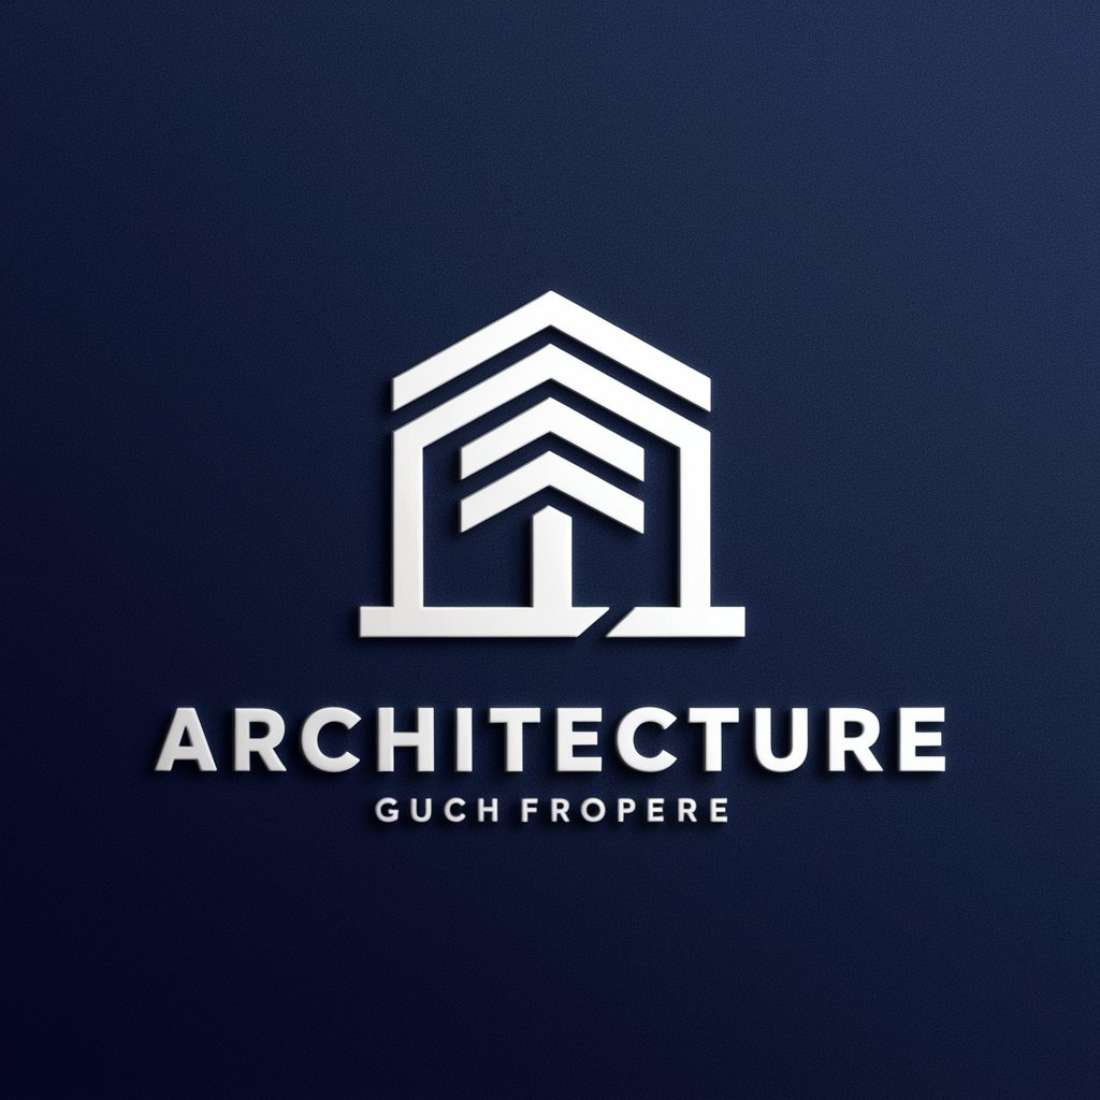 Architecture Logo Design preview image.